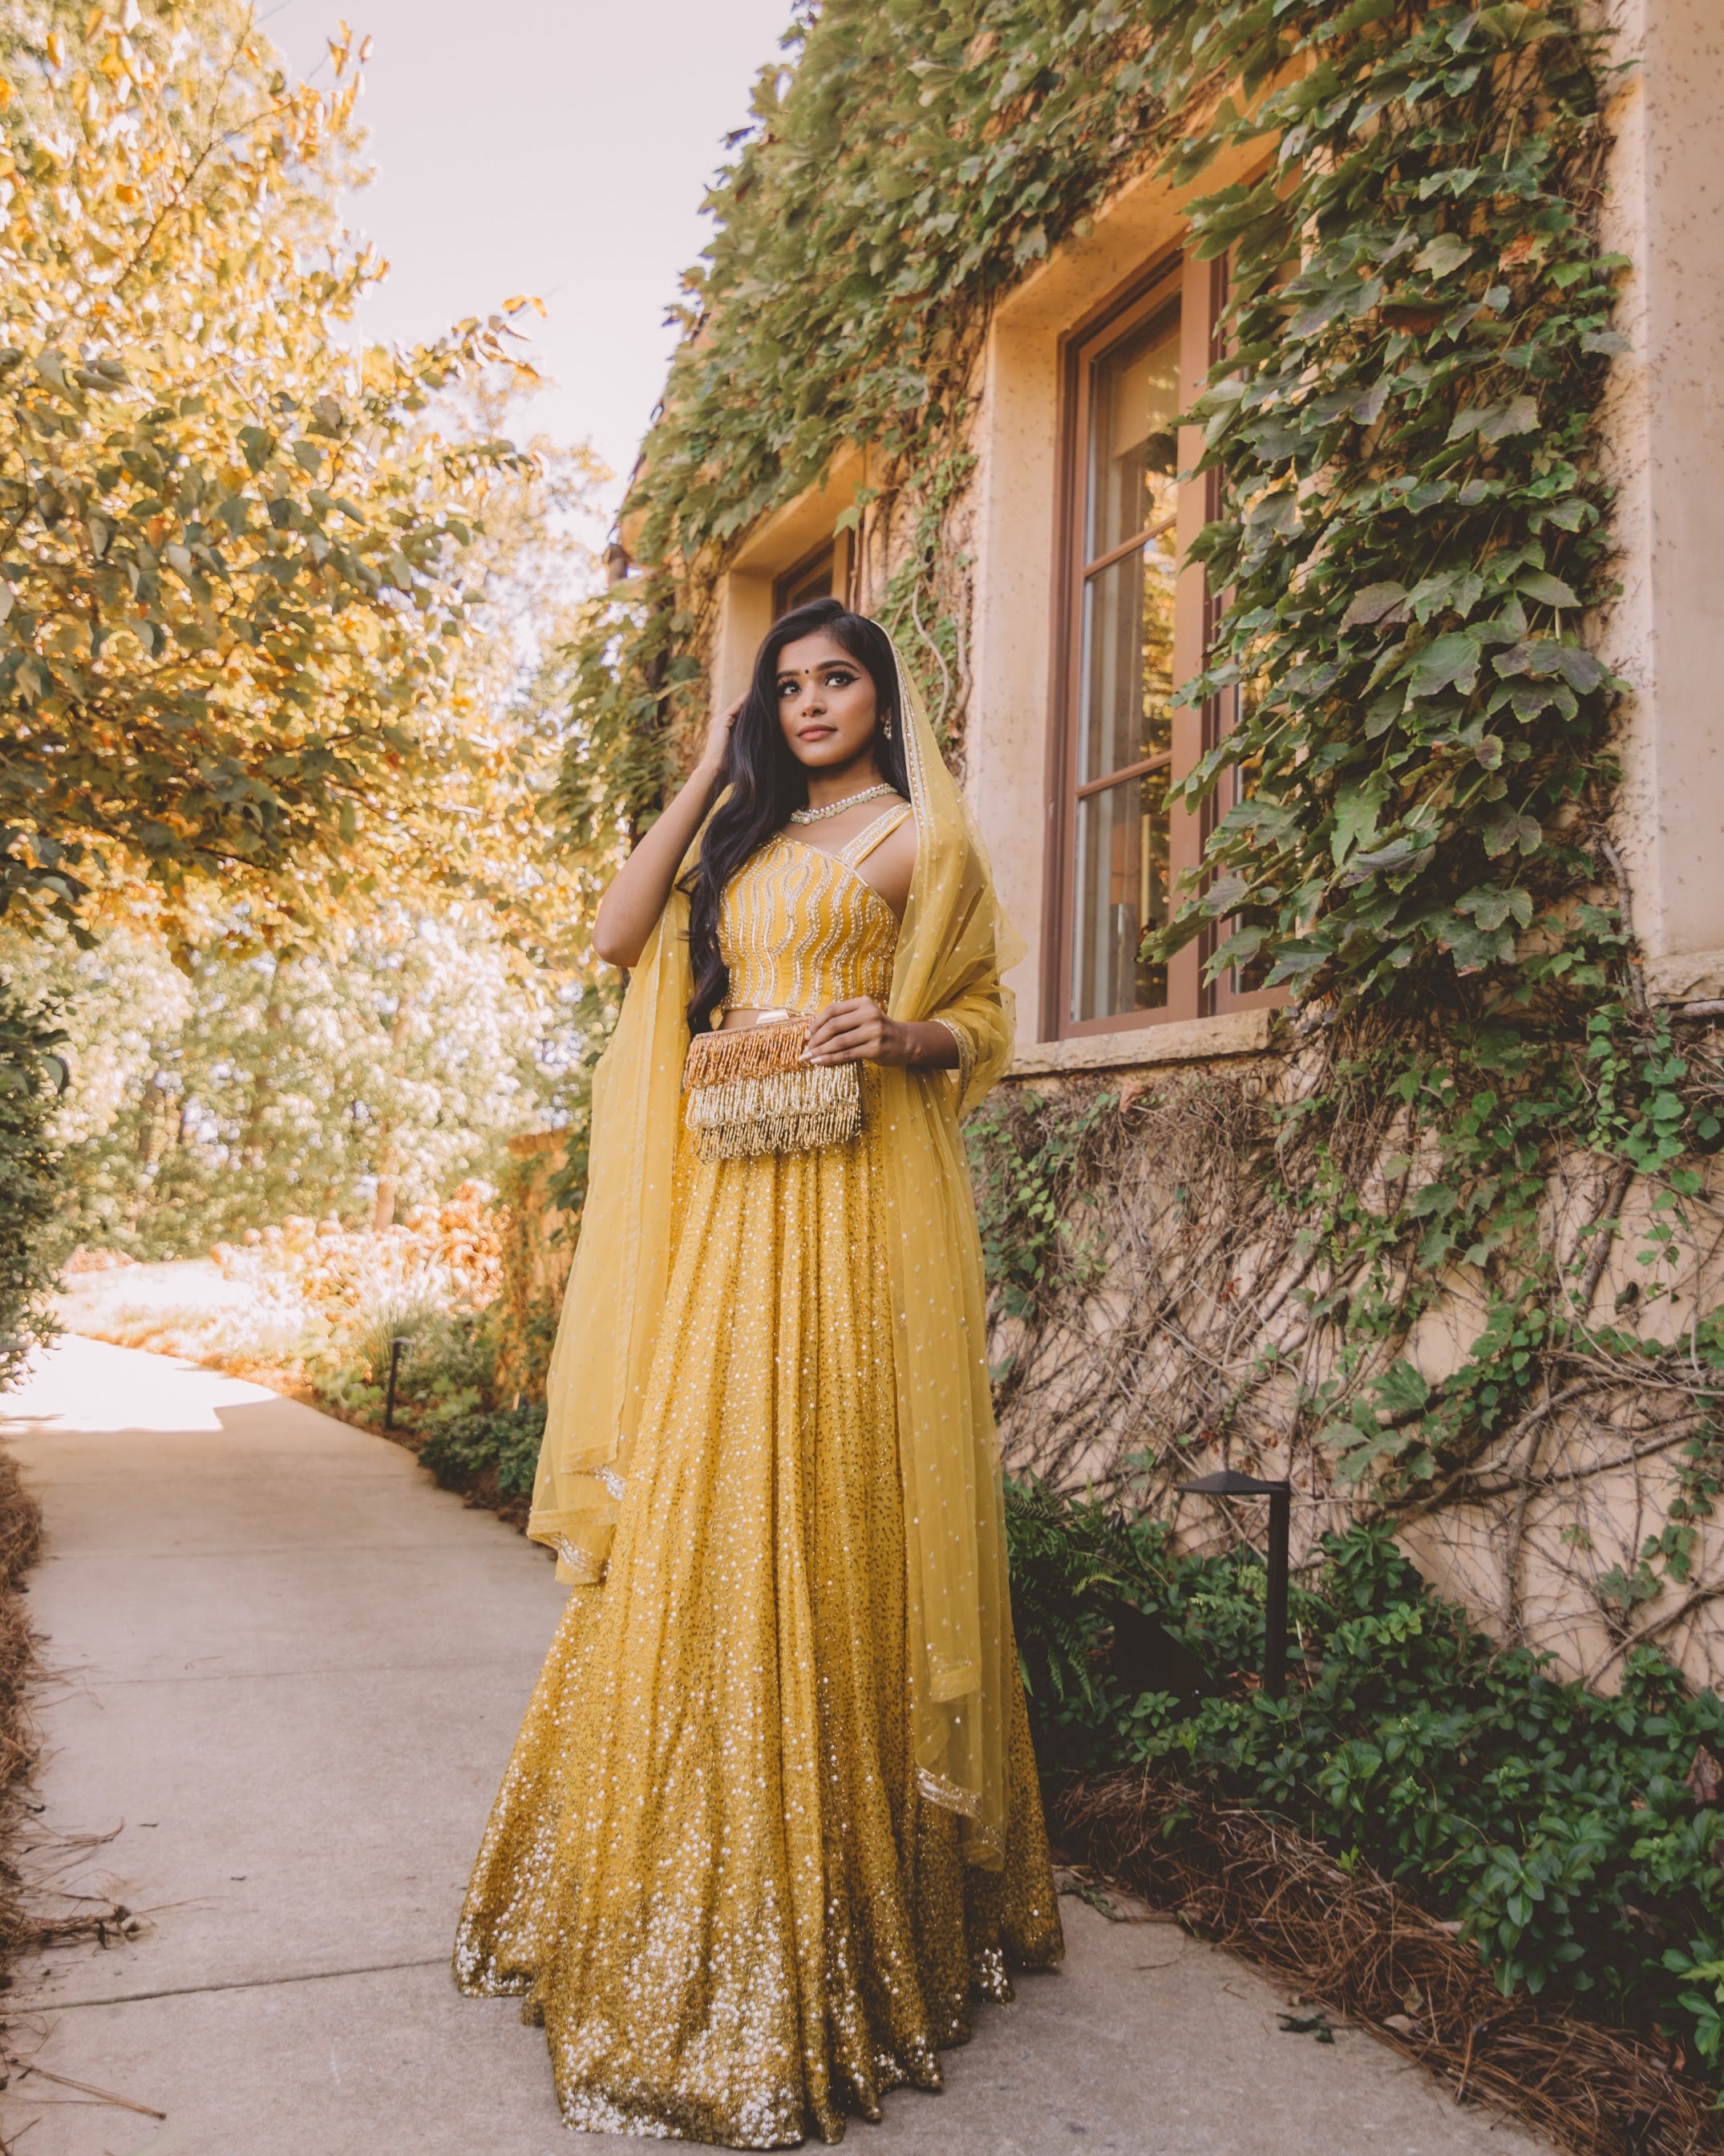 Elegant Mustard Yellow Monochrome Lehenga Choli Embellished with Gold Sequins - Best Indian Wedding Dresses Online at sushmapatel.us